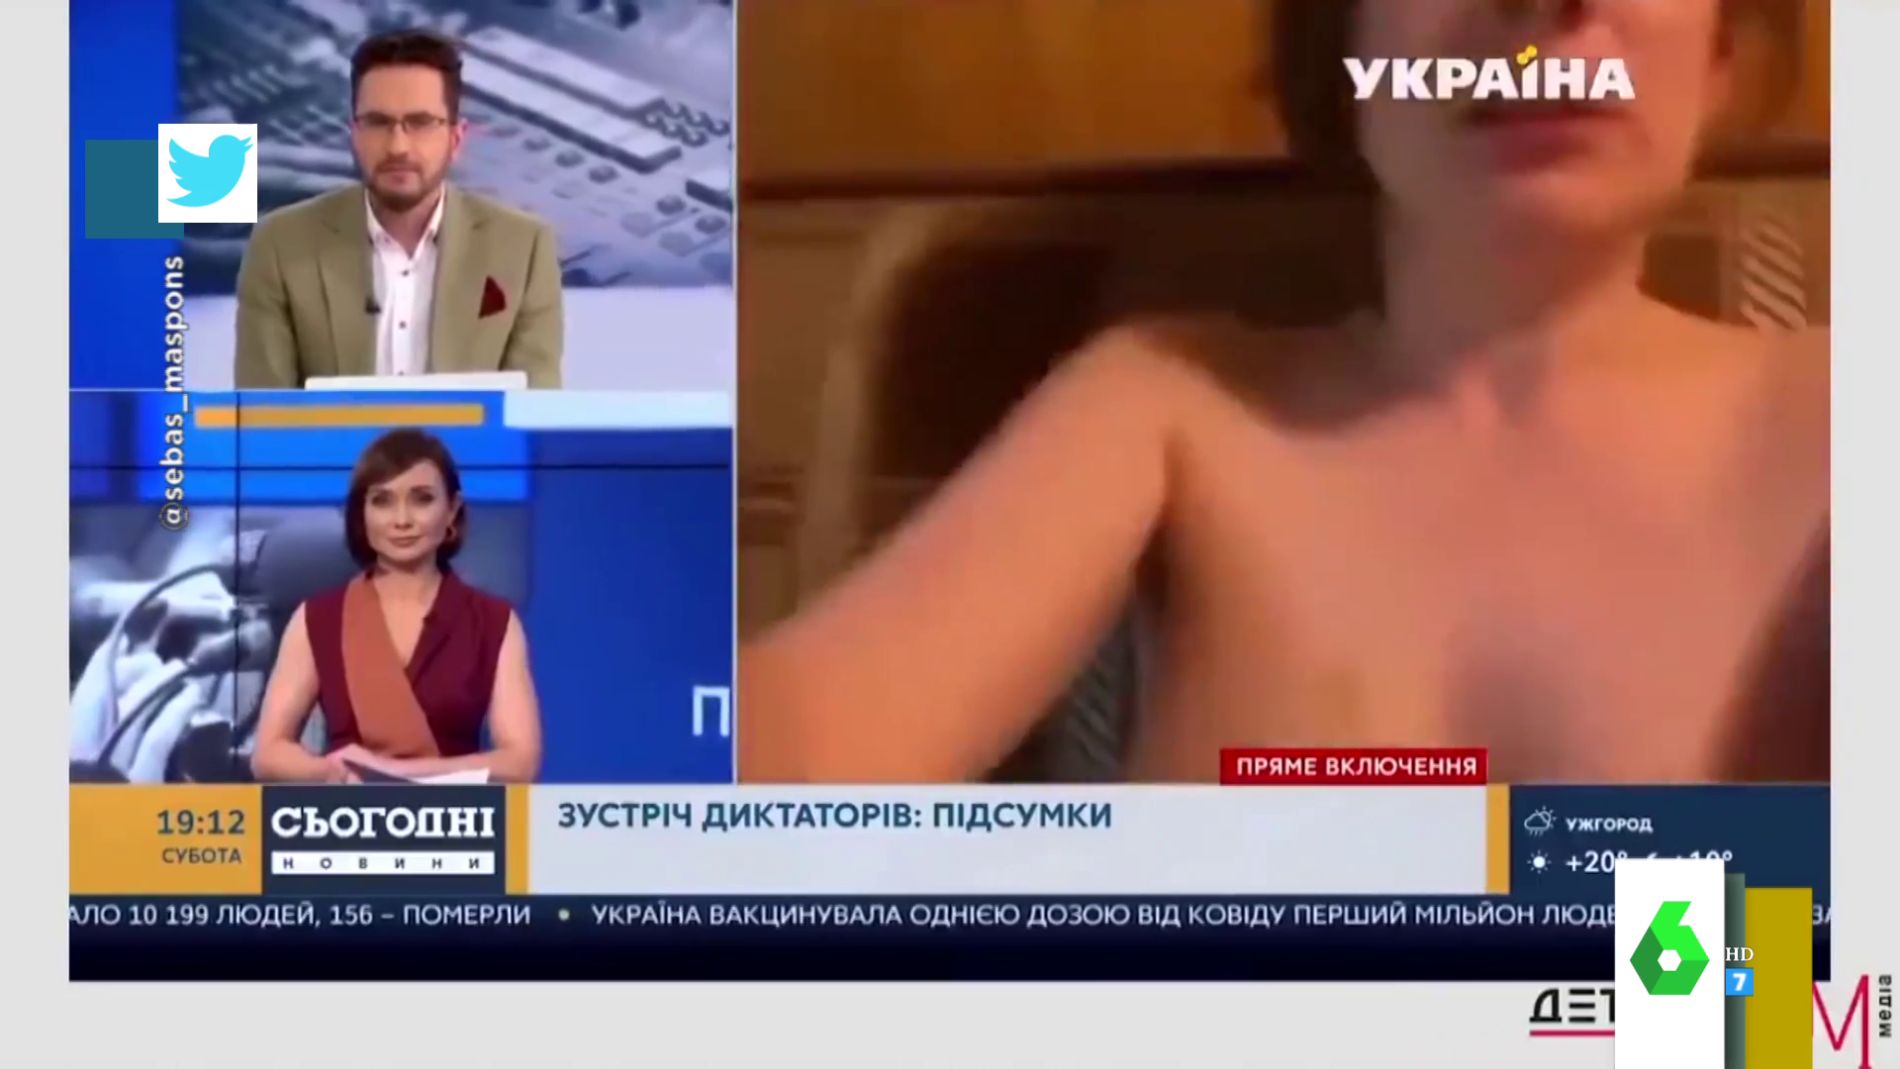 El inesperado momento en el que sale una mujer desnuda en una videollamada de televisión así son las reacciones en directo imagen Foto